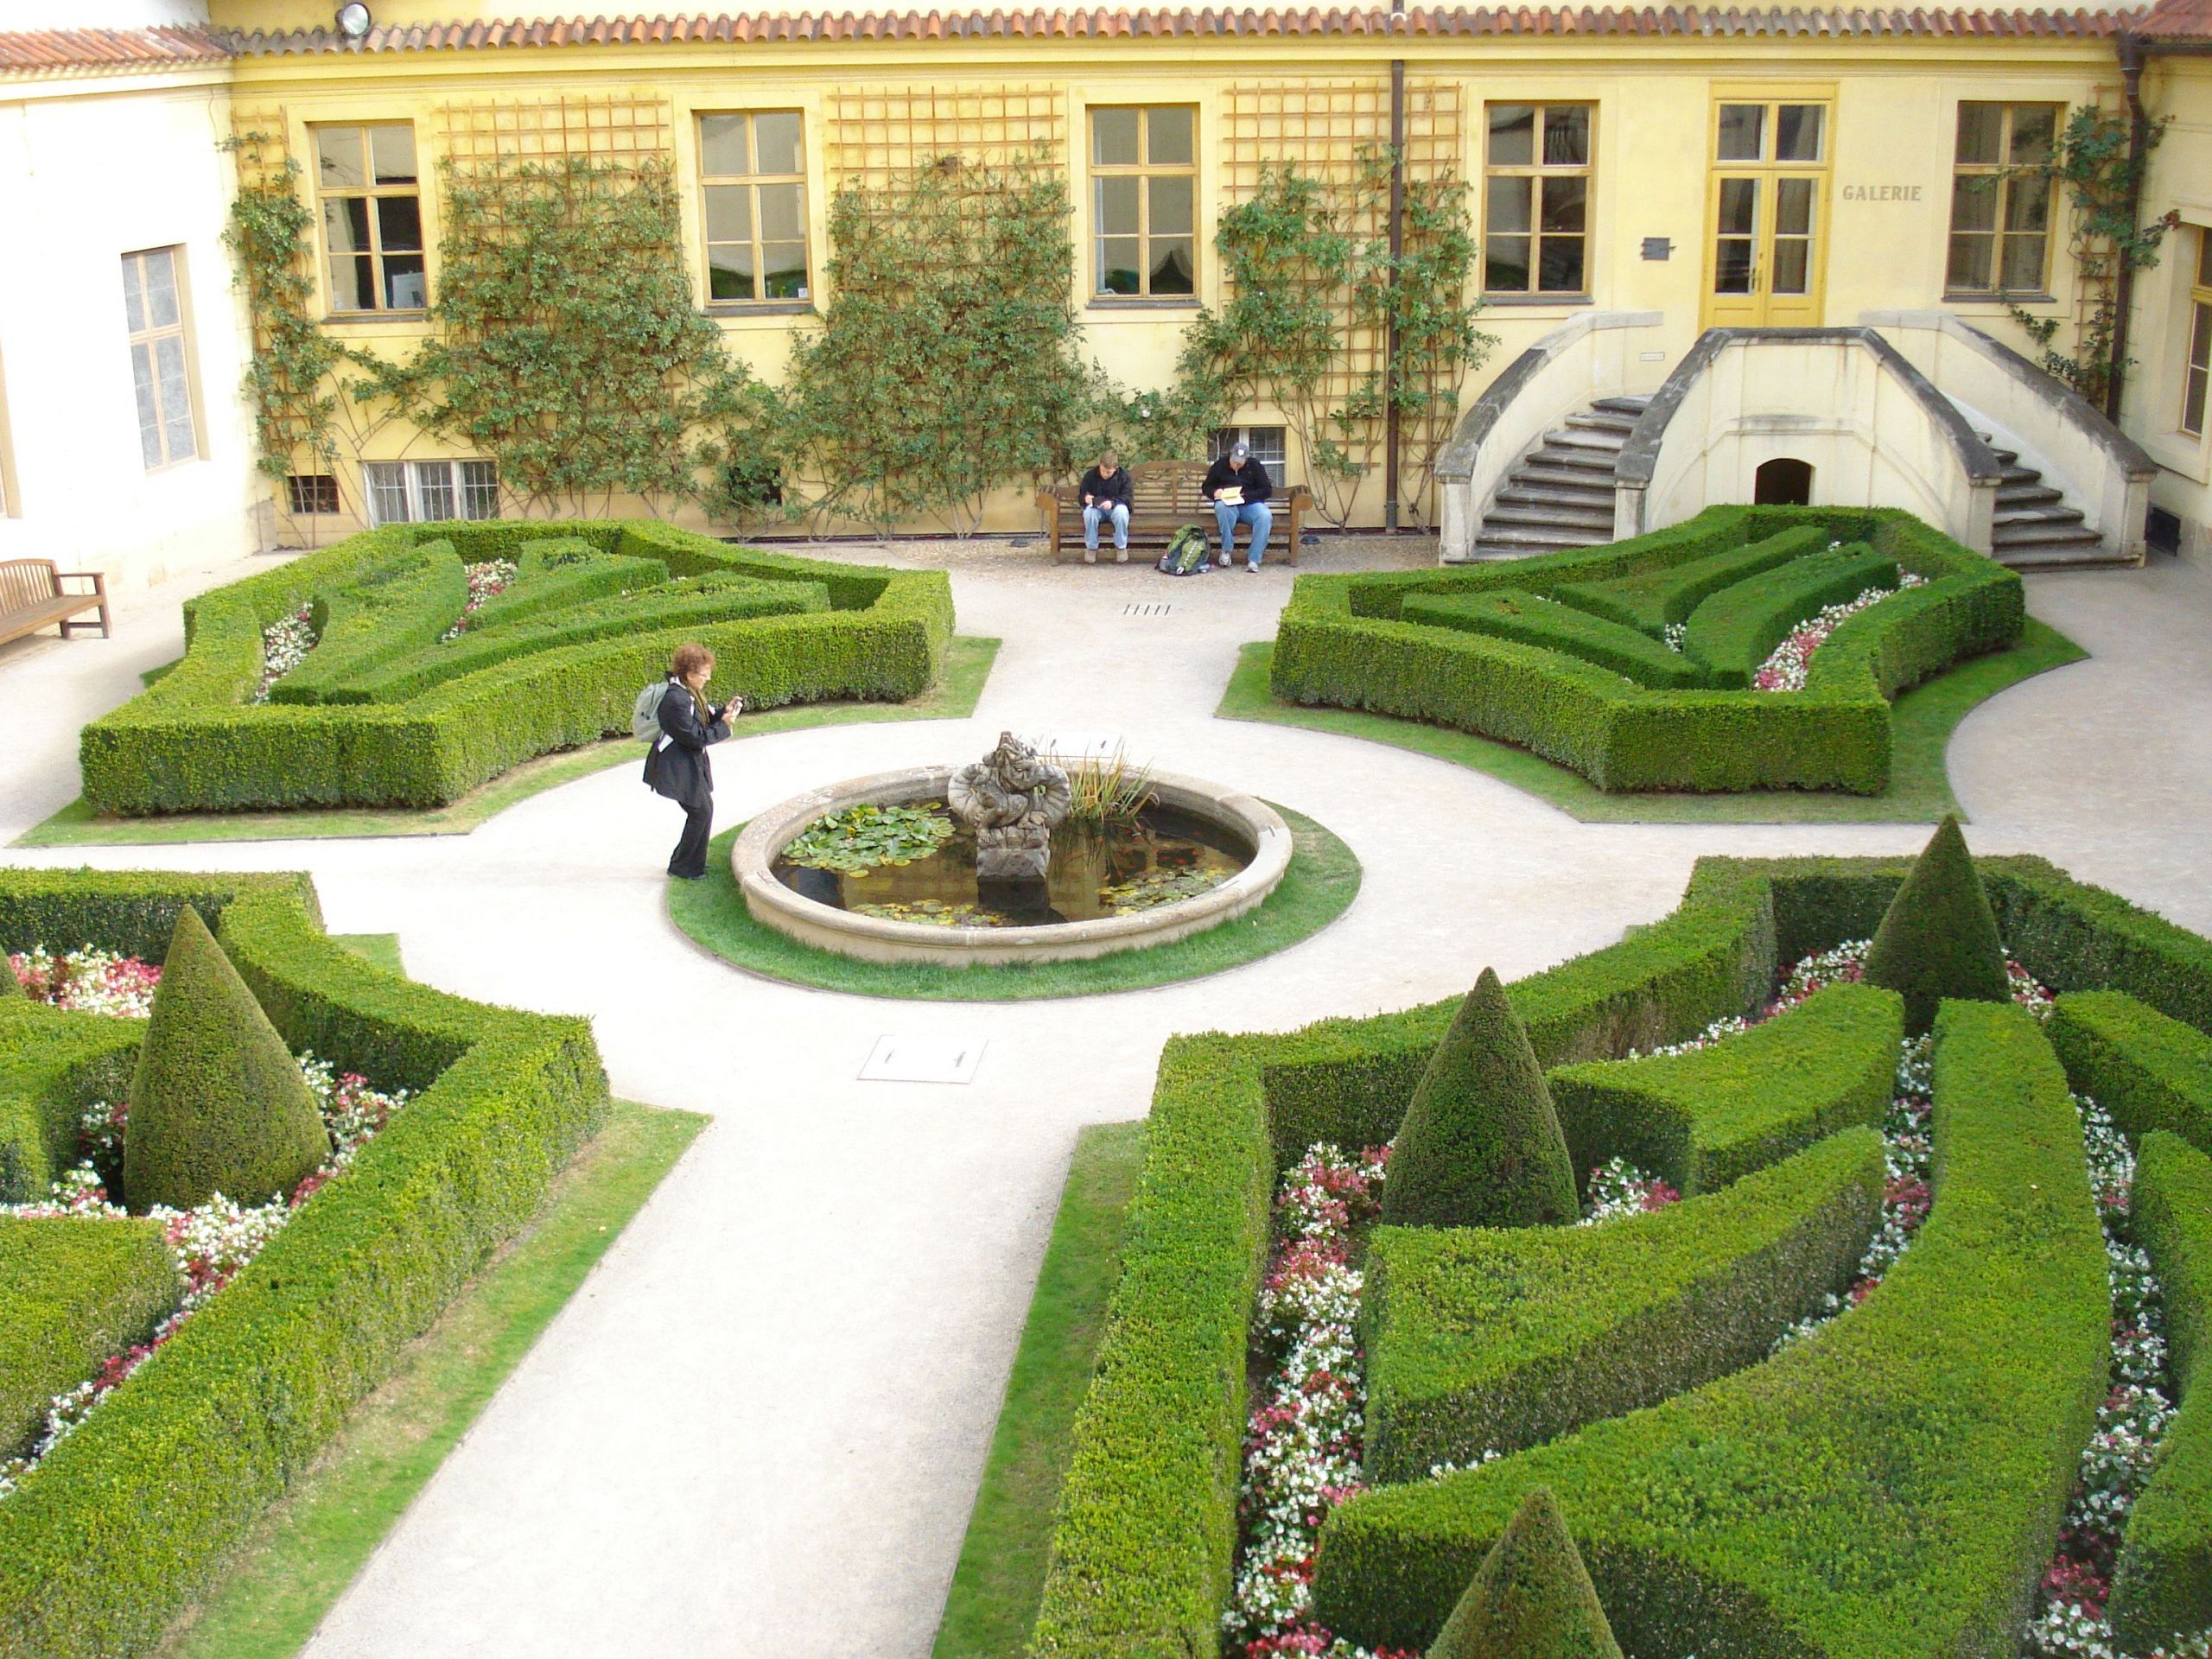 Garten Versailles Frisch Interior Hedge Design Prague Czech Republic